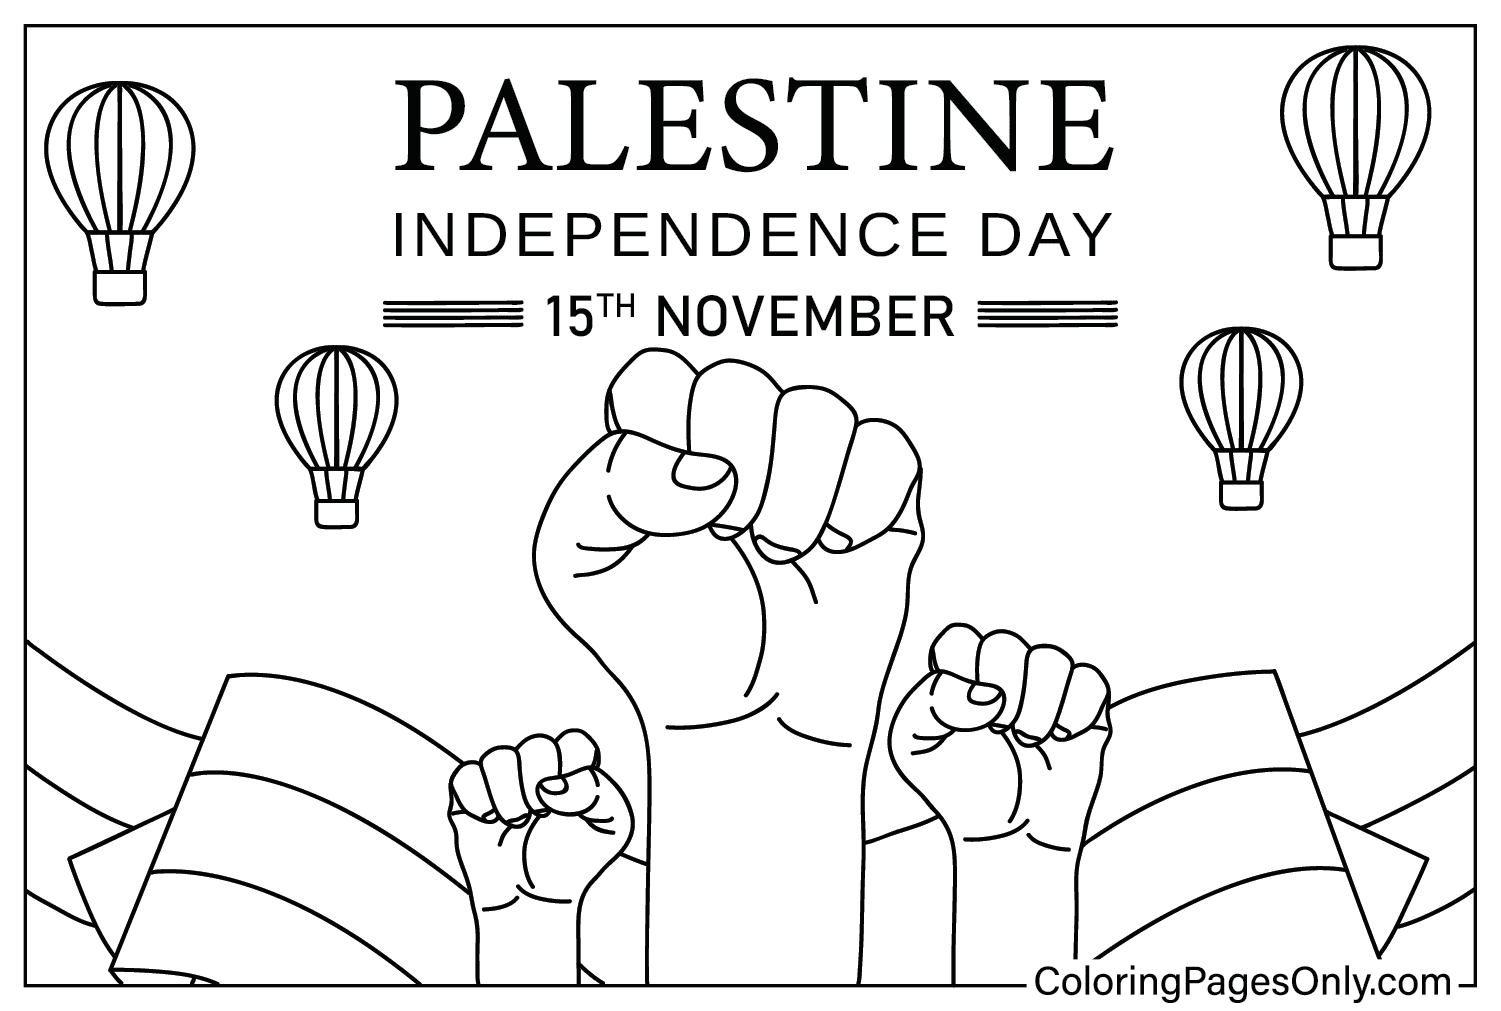 Página para colorear del Día de la Independencia de Palestina